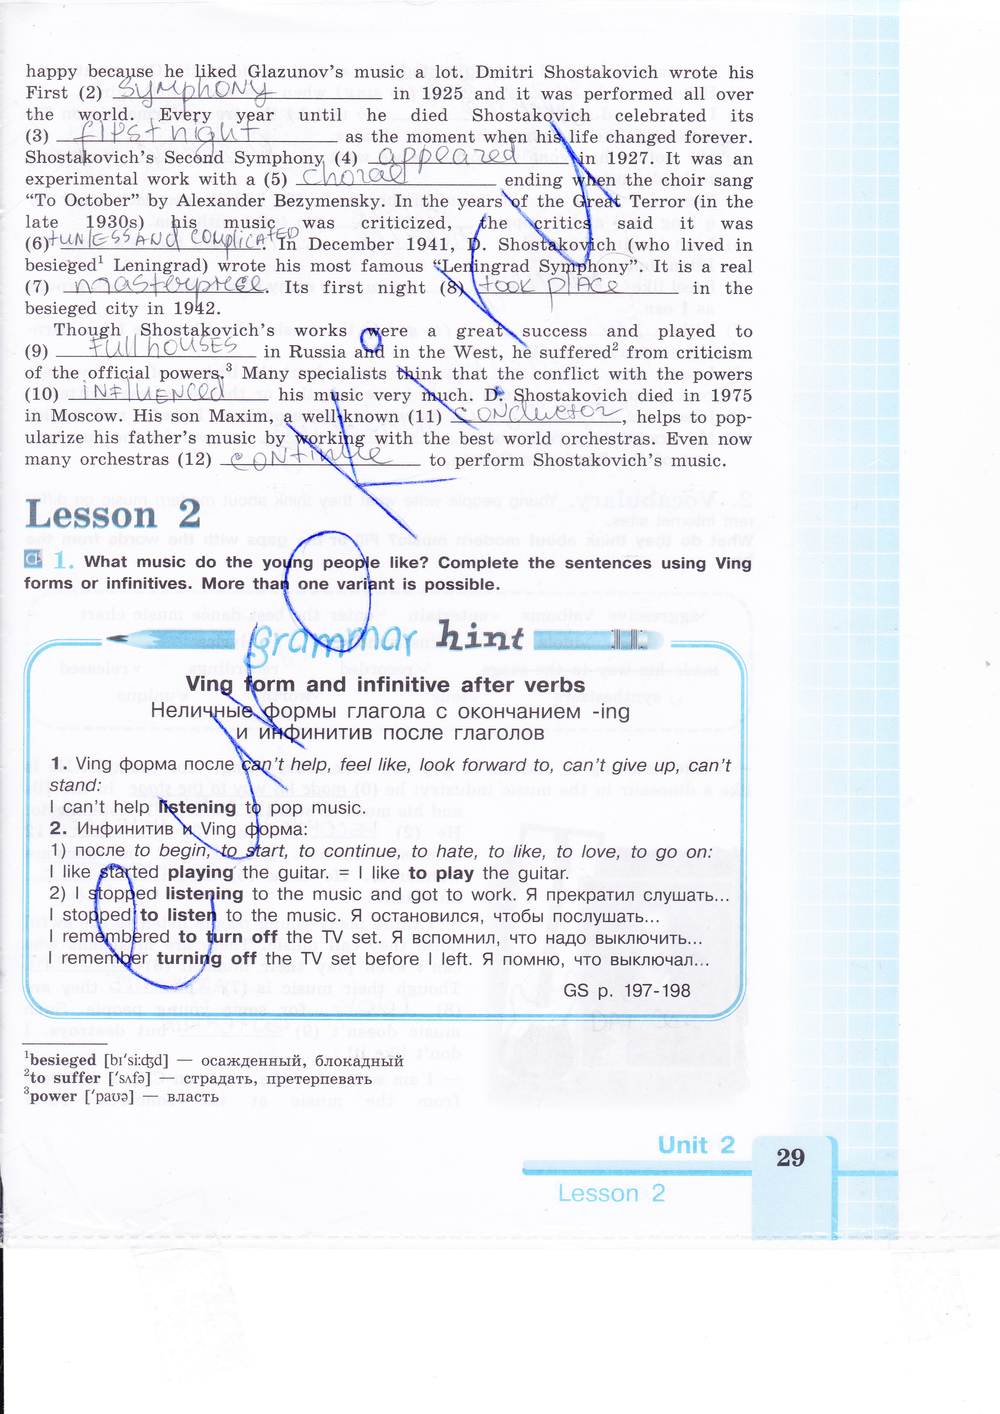 Рабочая тетрадь по английскому языку 9 класс (зеленая и синяя обложки) Кузовлев, Лапа, Перегудова Страница 29